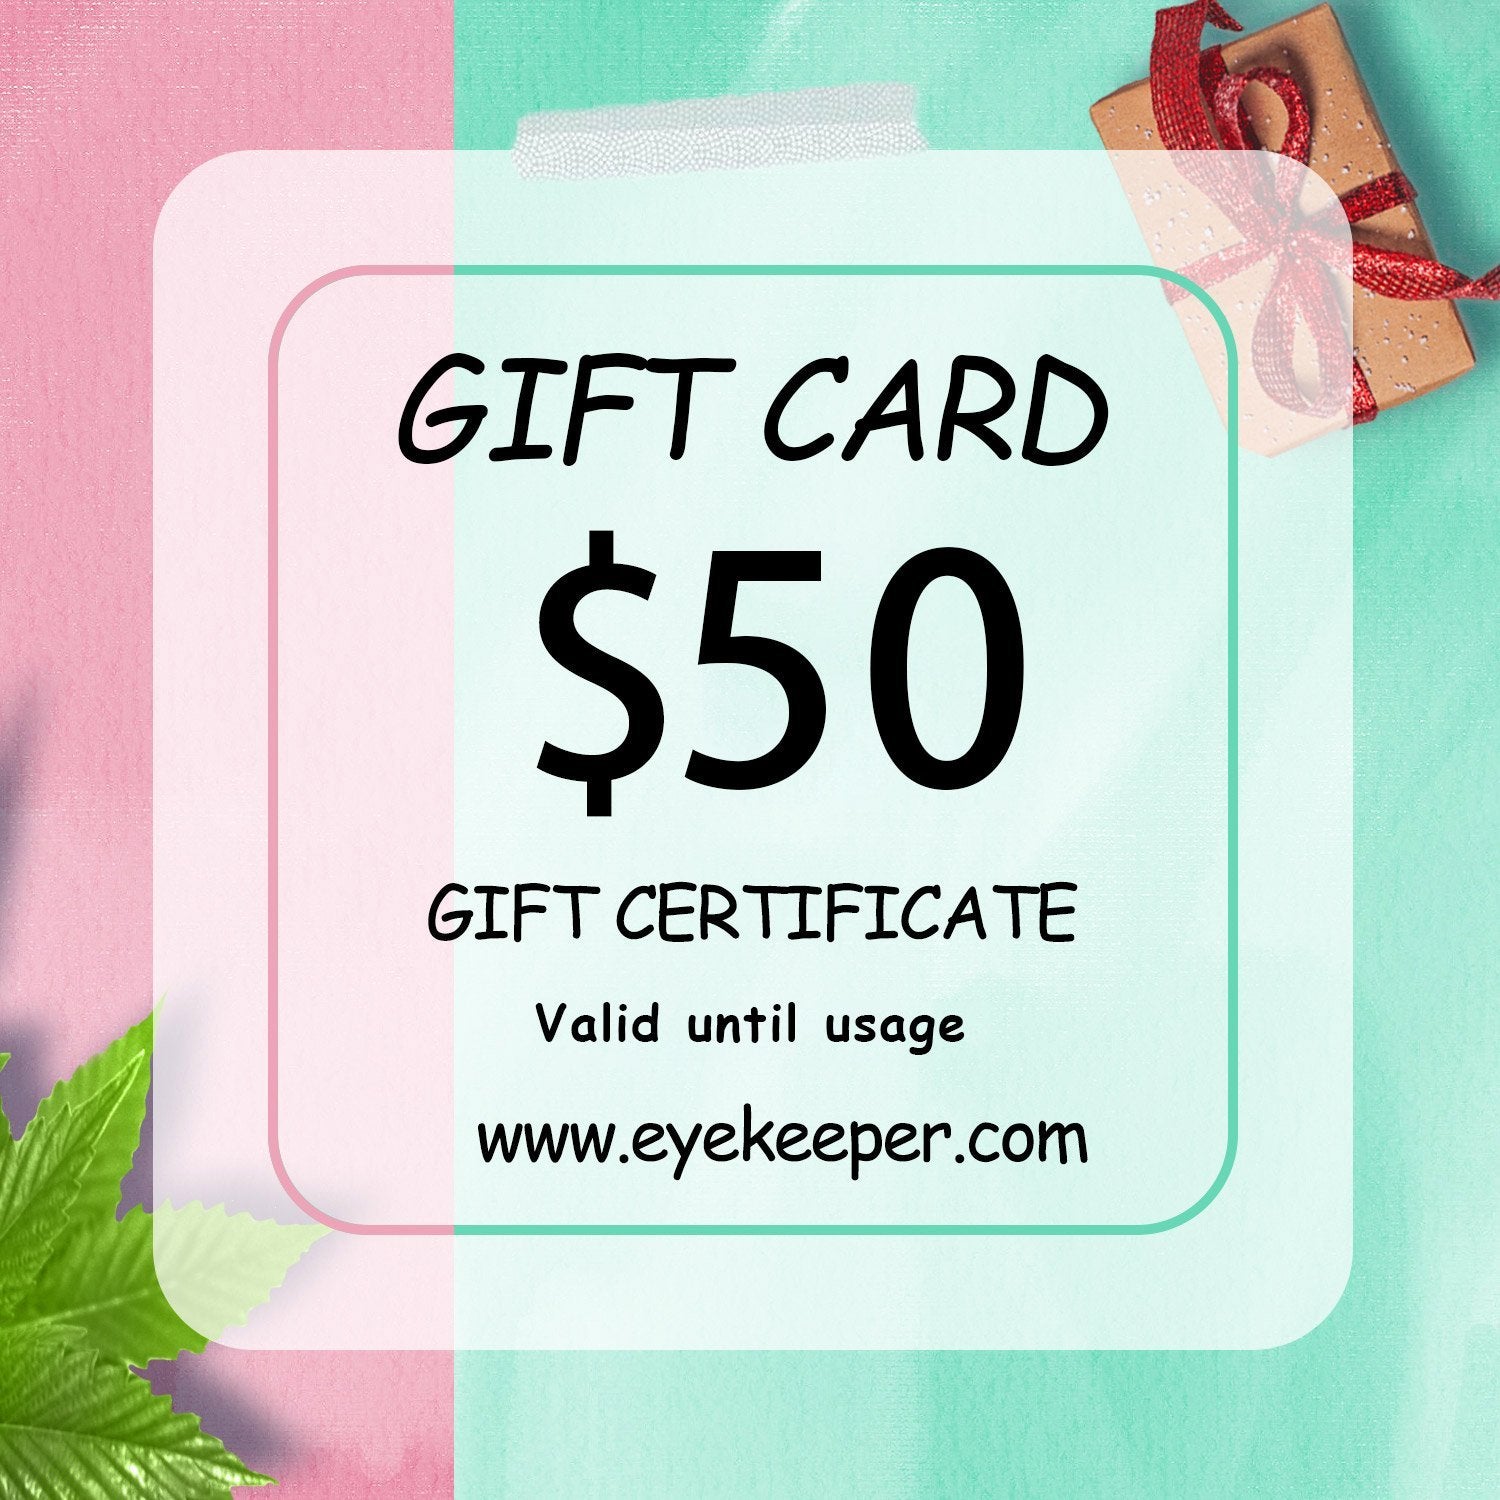 eyekeeper.com gift card